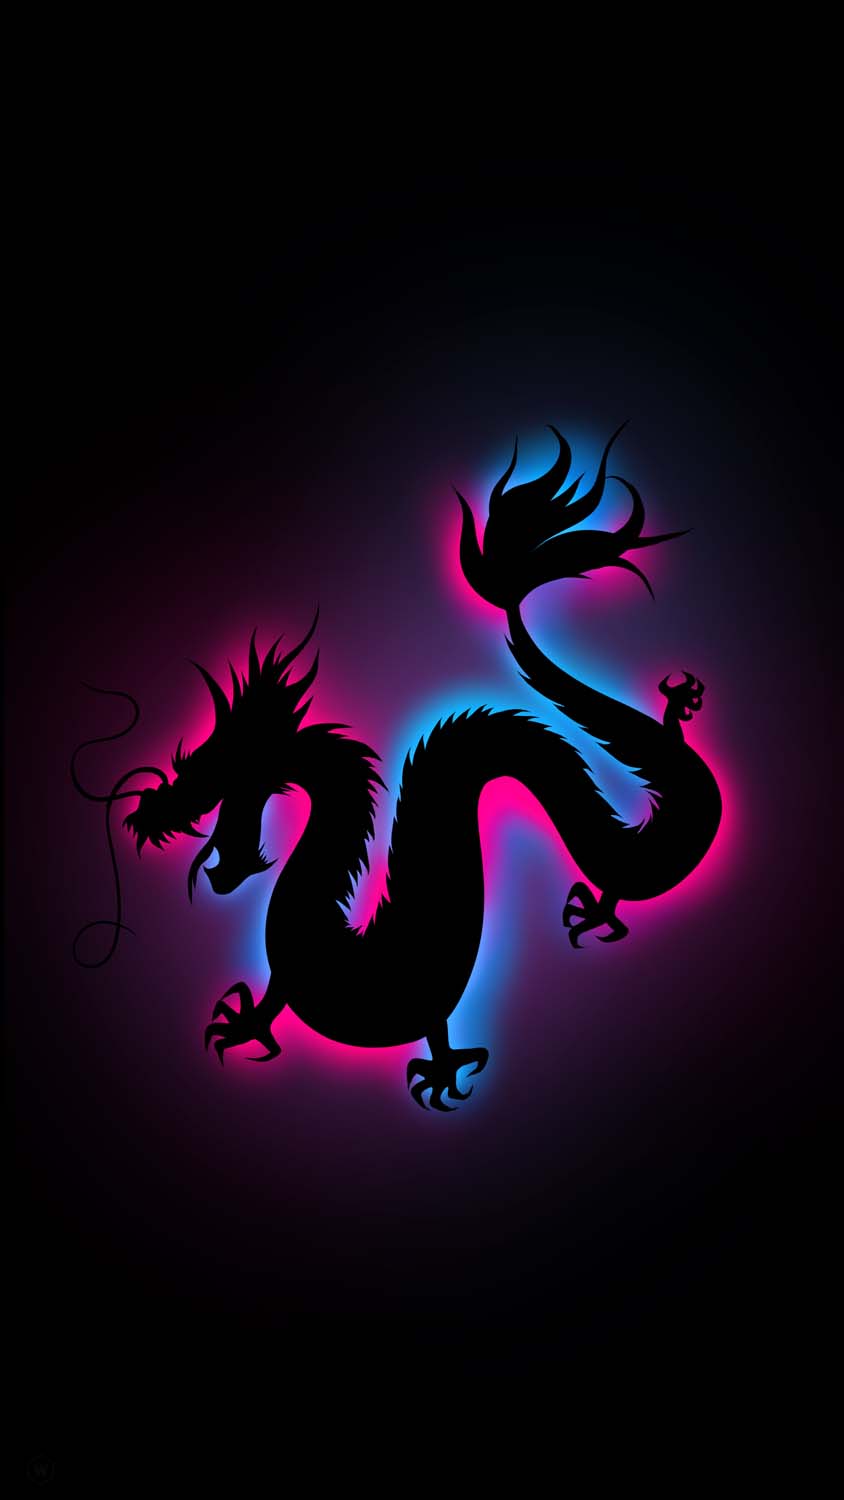 Dragon Shadow IPhone fond decran HD